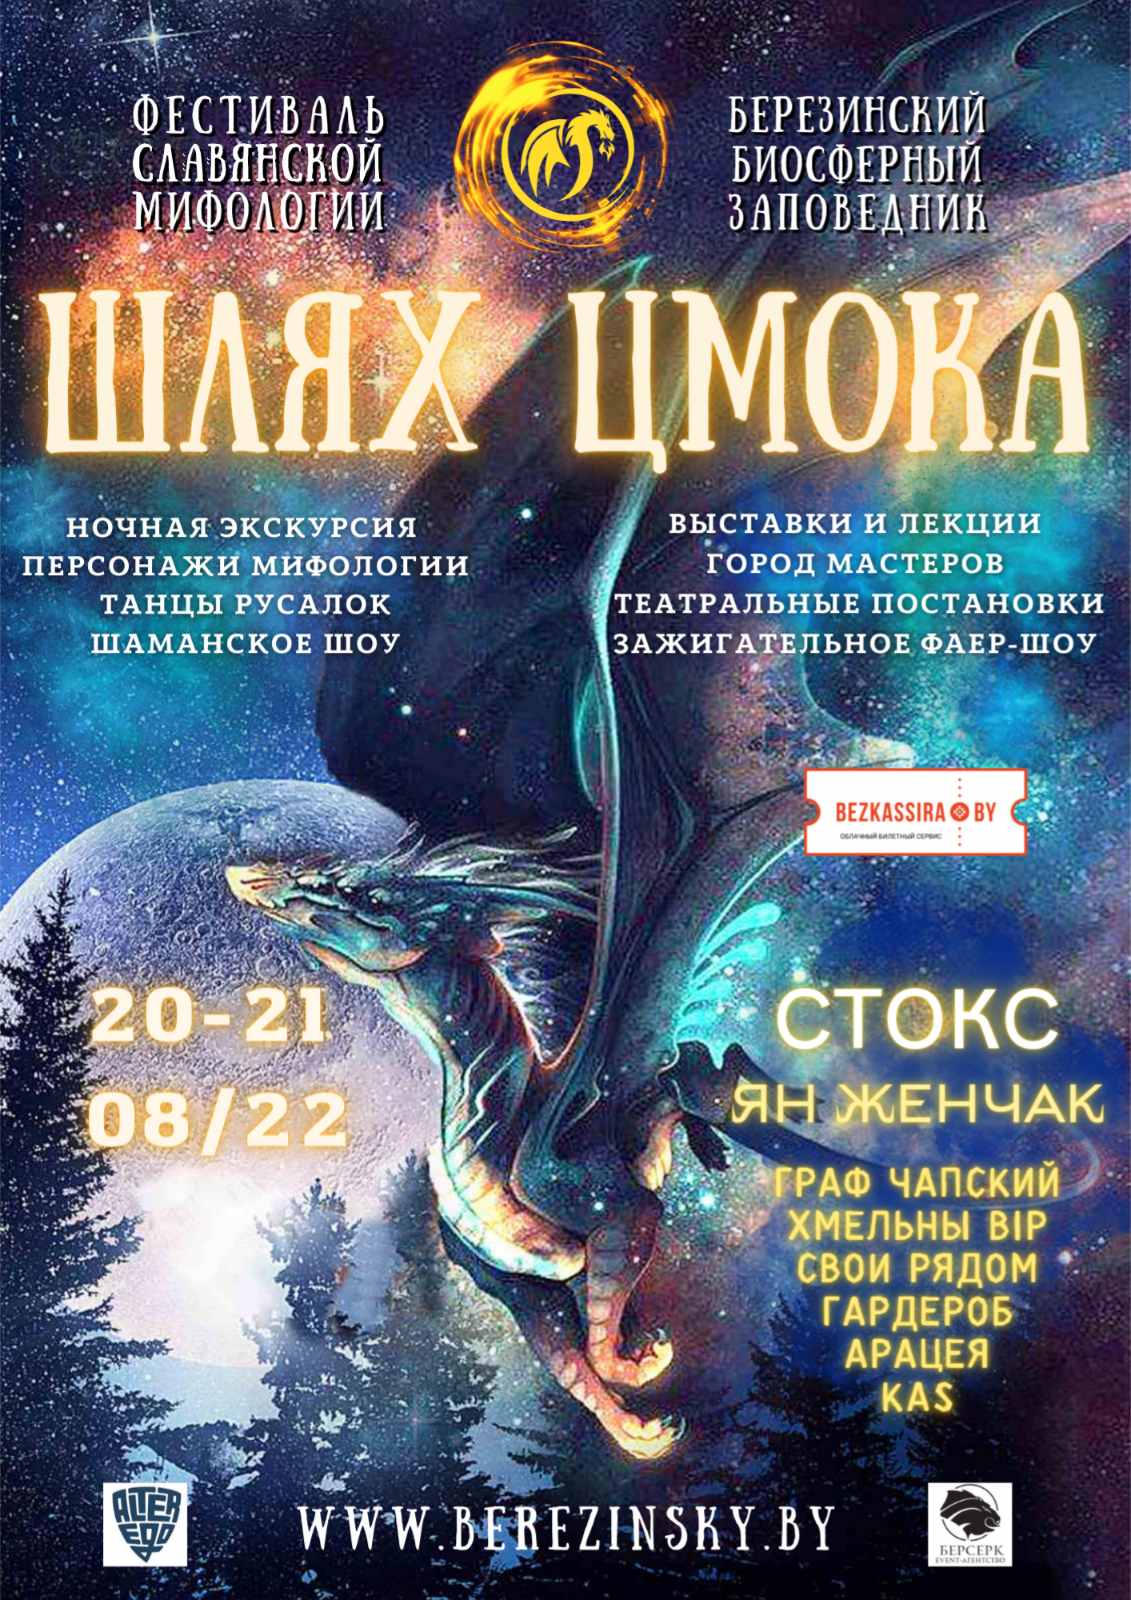 Фестиваль славянской мифологии ««ШЛЯХ ЦМОКА - ПУТЬ ЦМОКА – TSMOK’S WAY»